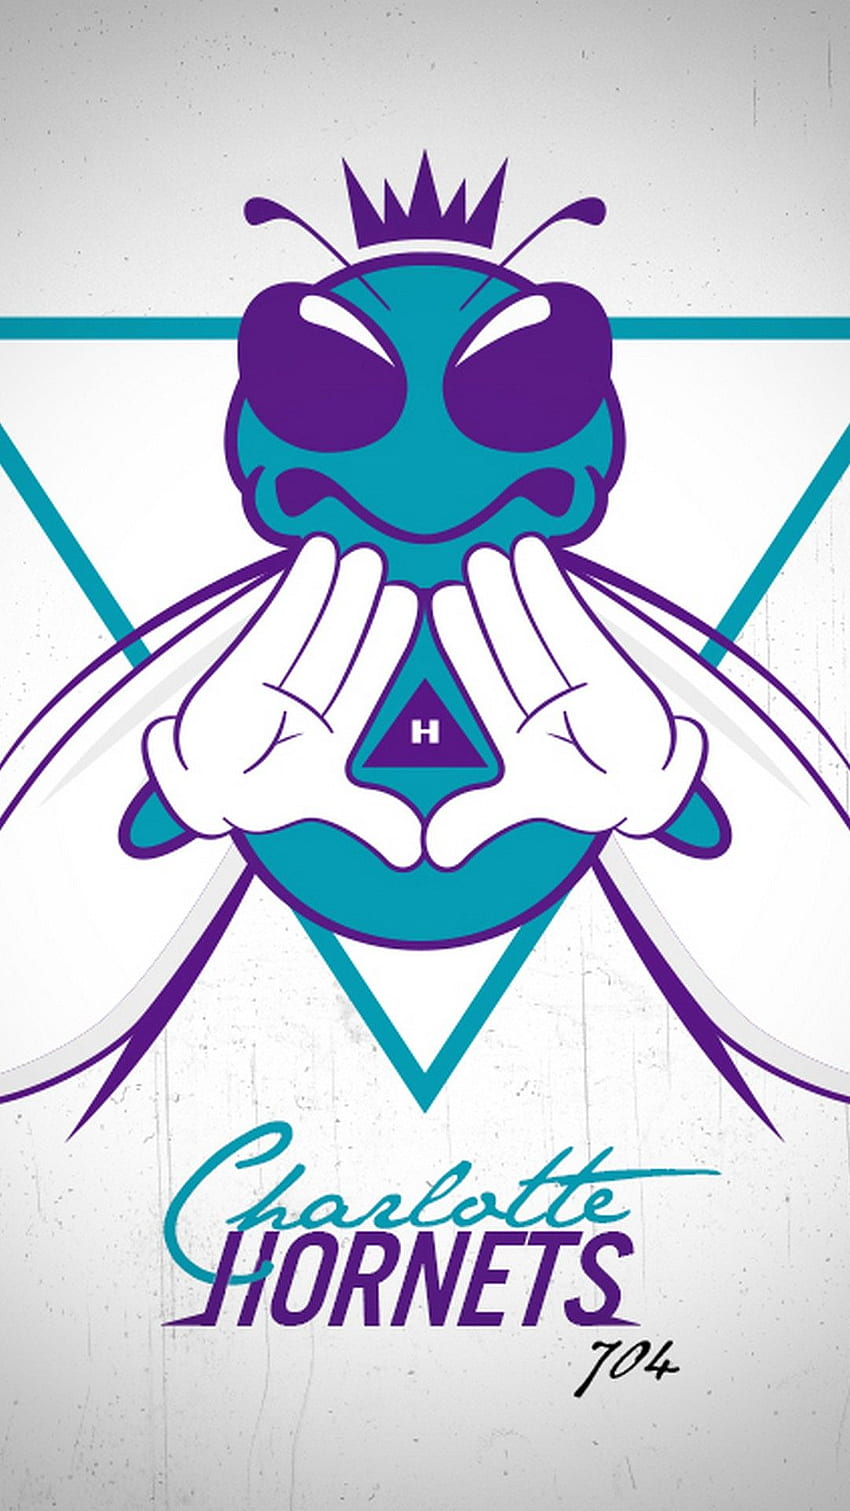 Charlotte Hornets For iPhone. 2021 Basketball, Charlotte Hornets Logo HD phone wallpaper